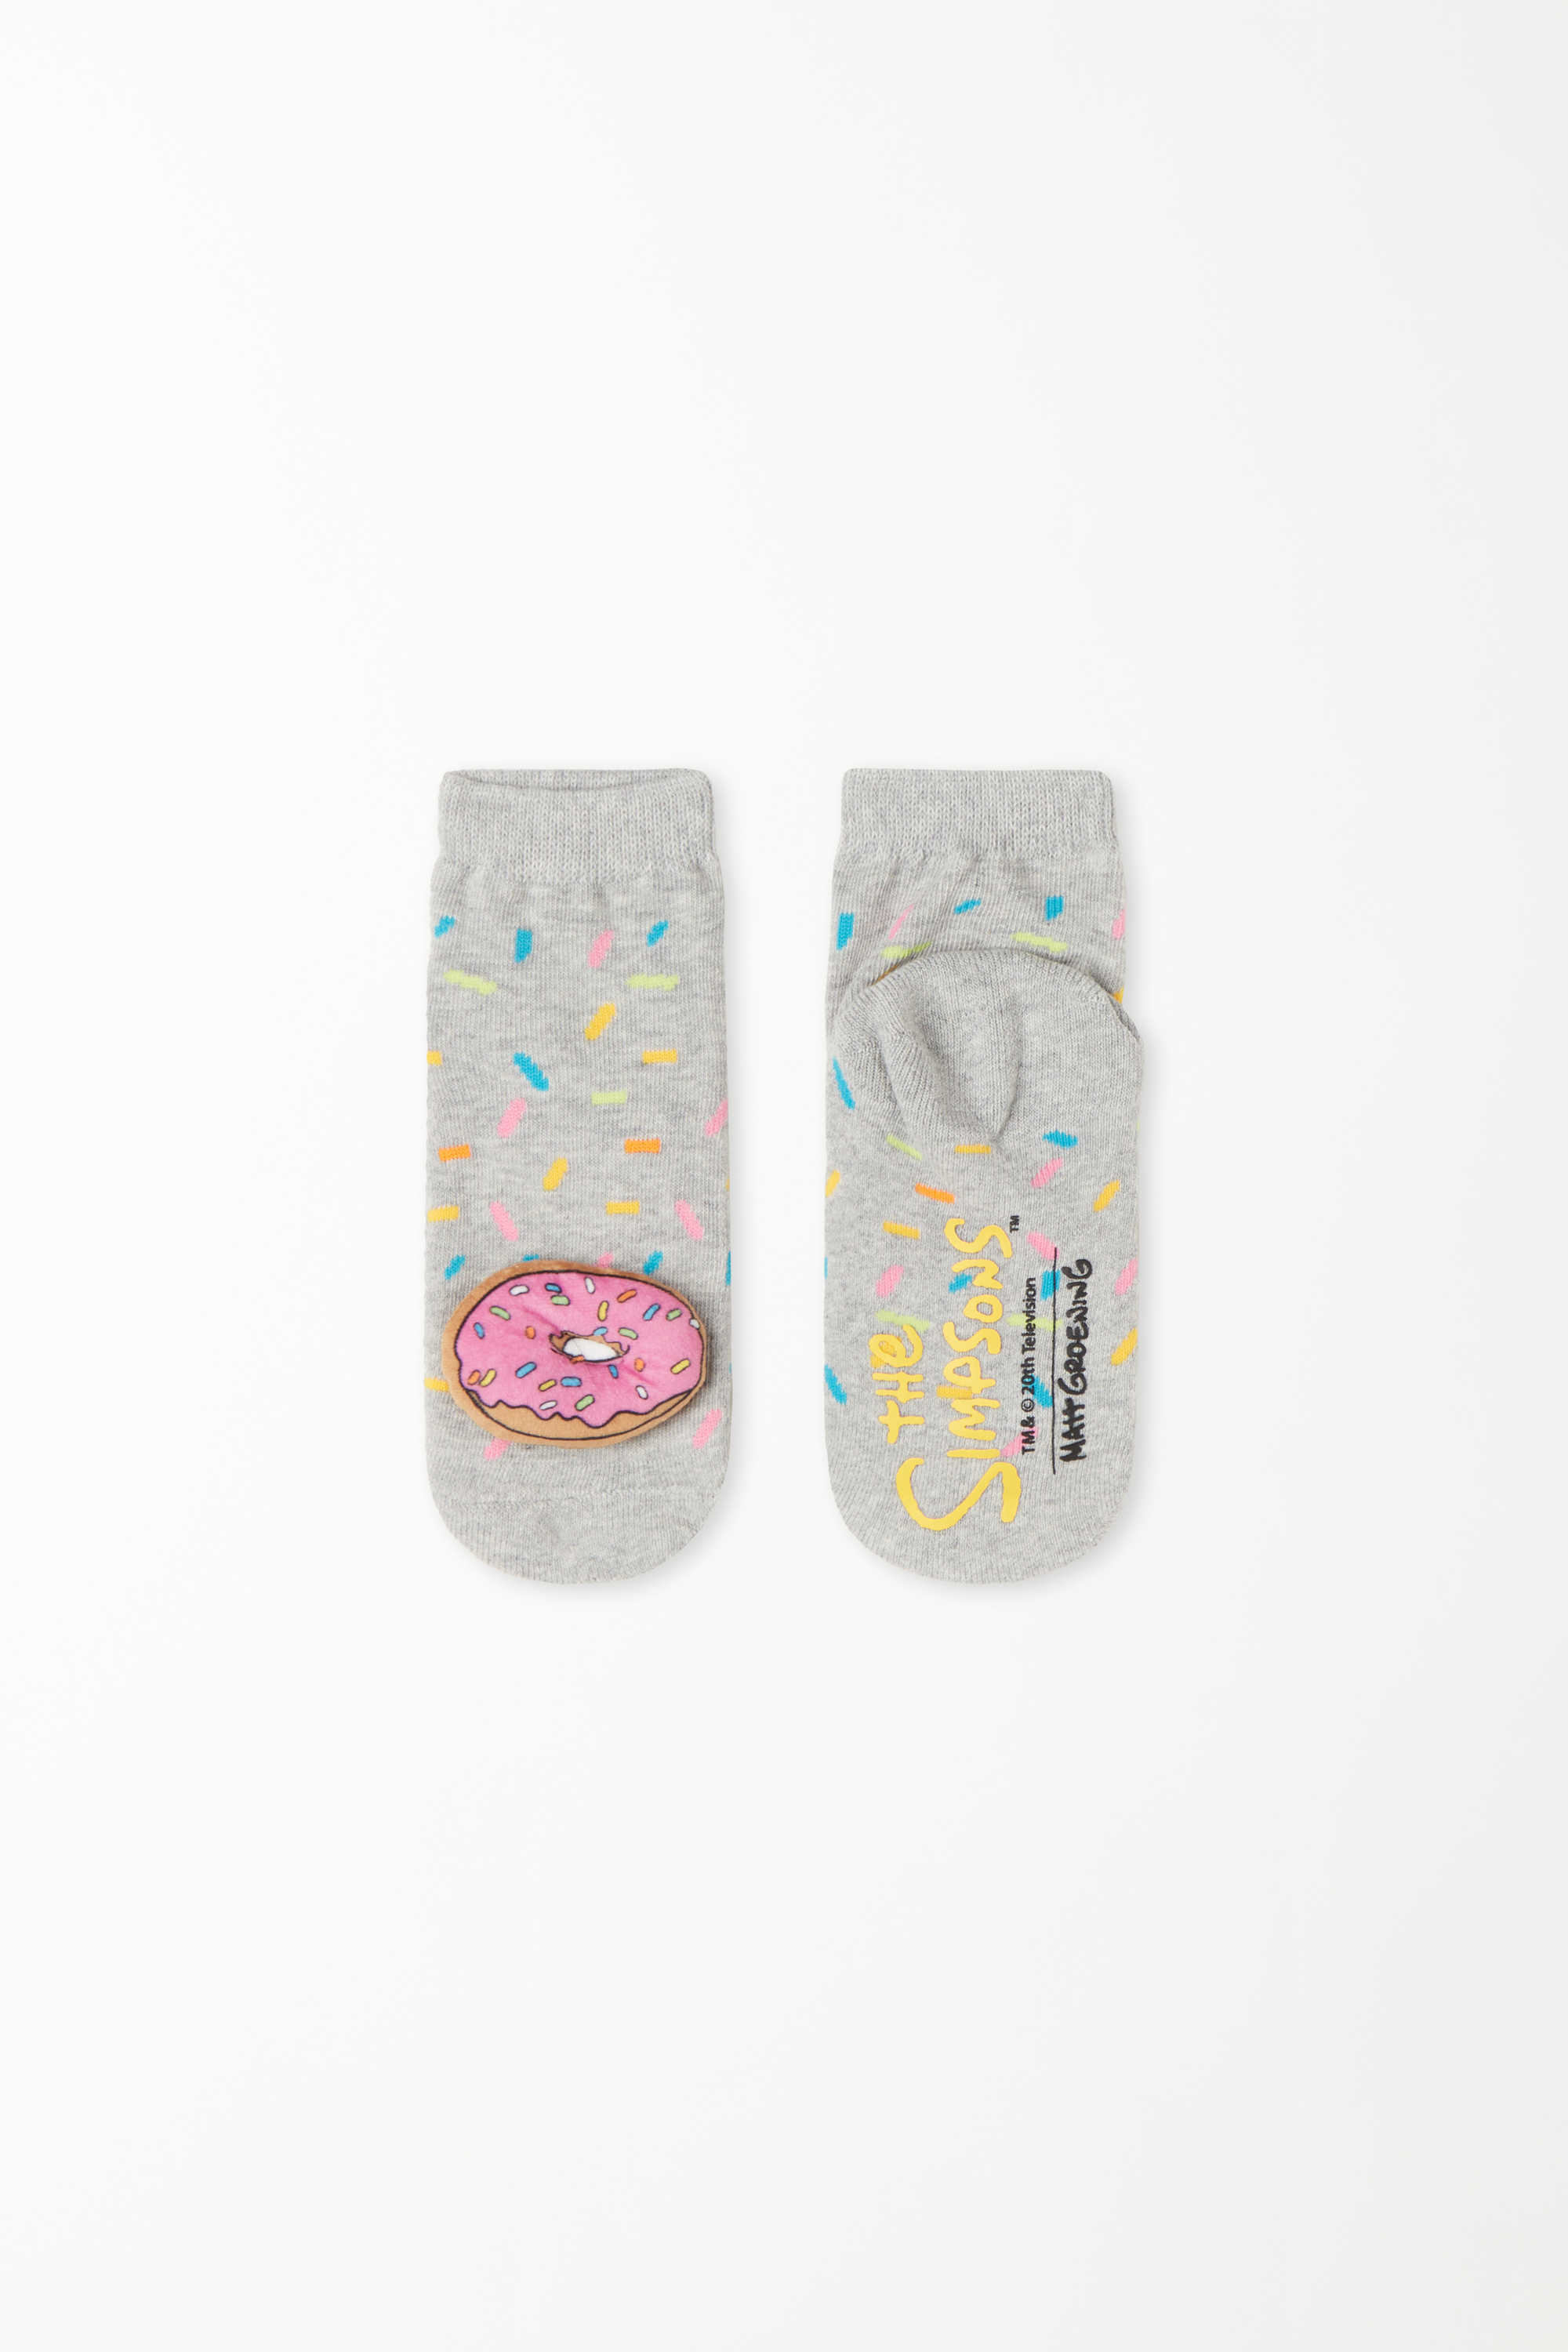 Παιδικές Unisex Αντιολισθητικές Κάλτσες με Print The Simpsons